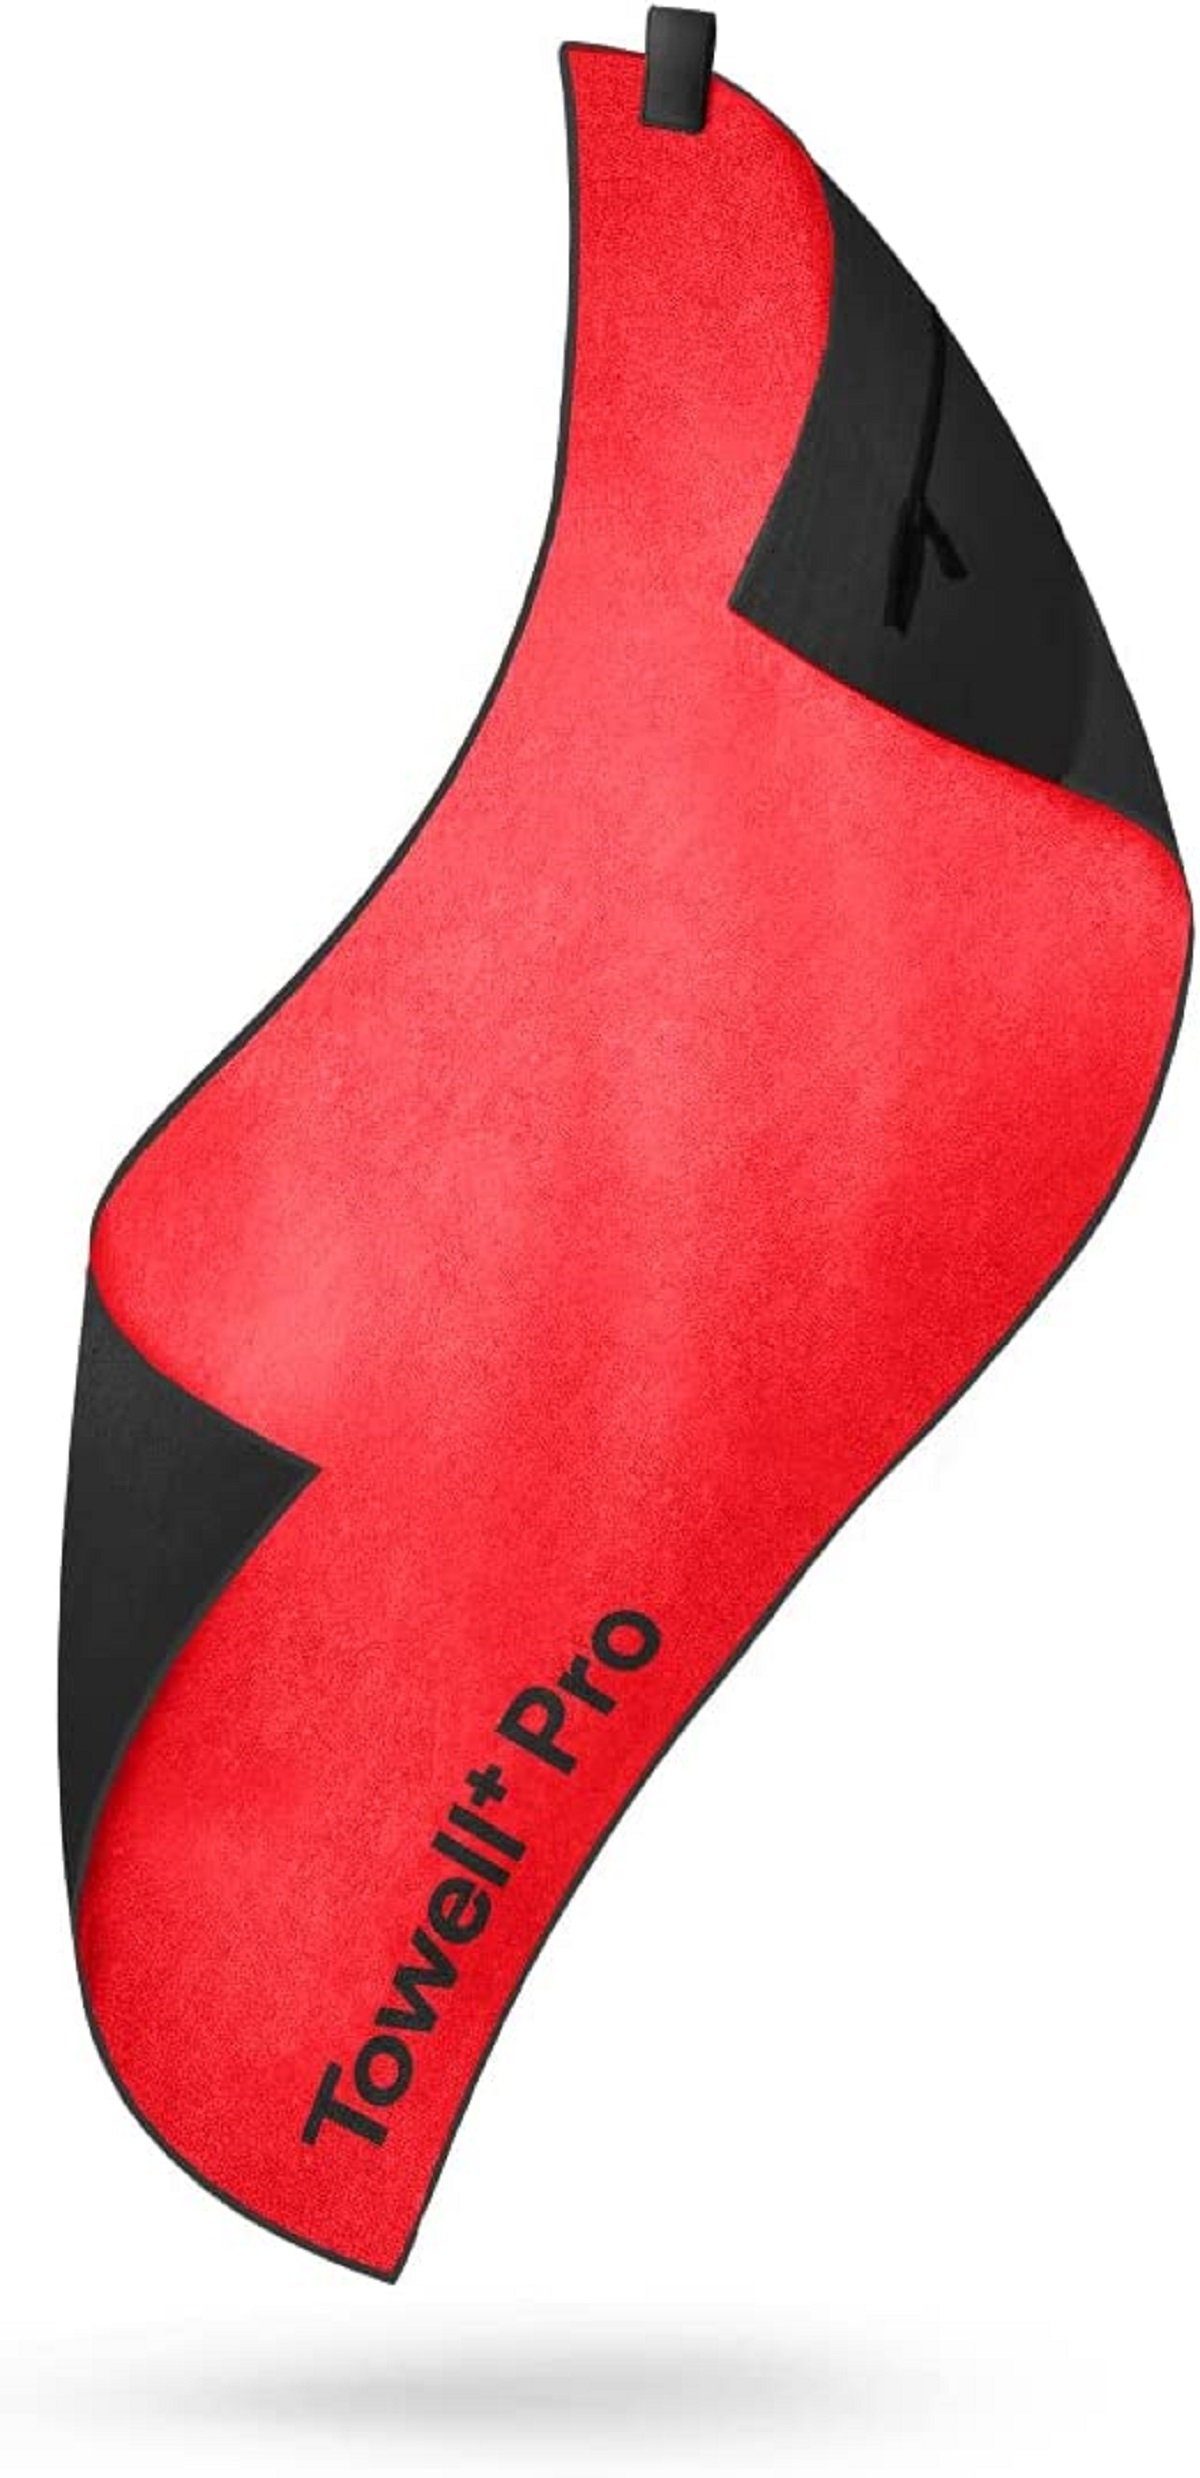 Rutschschutz x Tasche + Pro Sporthandtuch Red, TOWELL mit Stryve Neon Magnet, + 42,5cm) (105